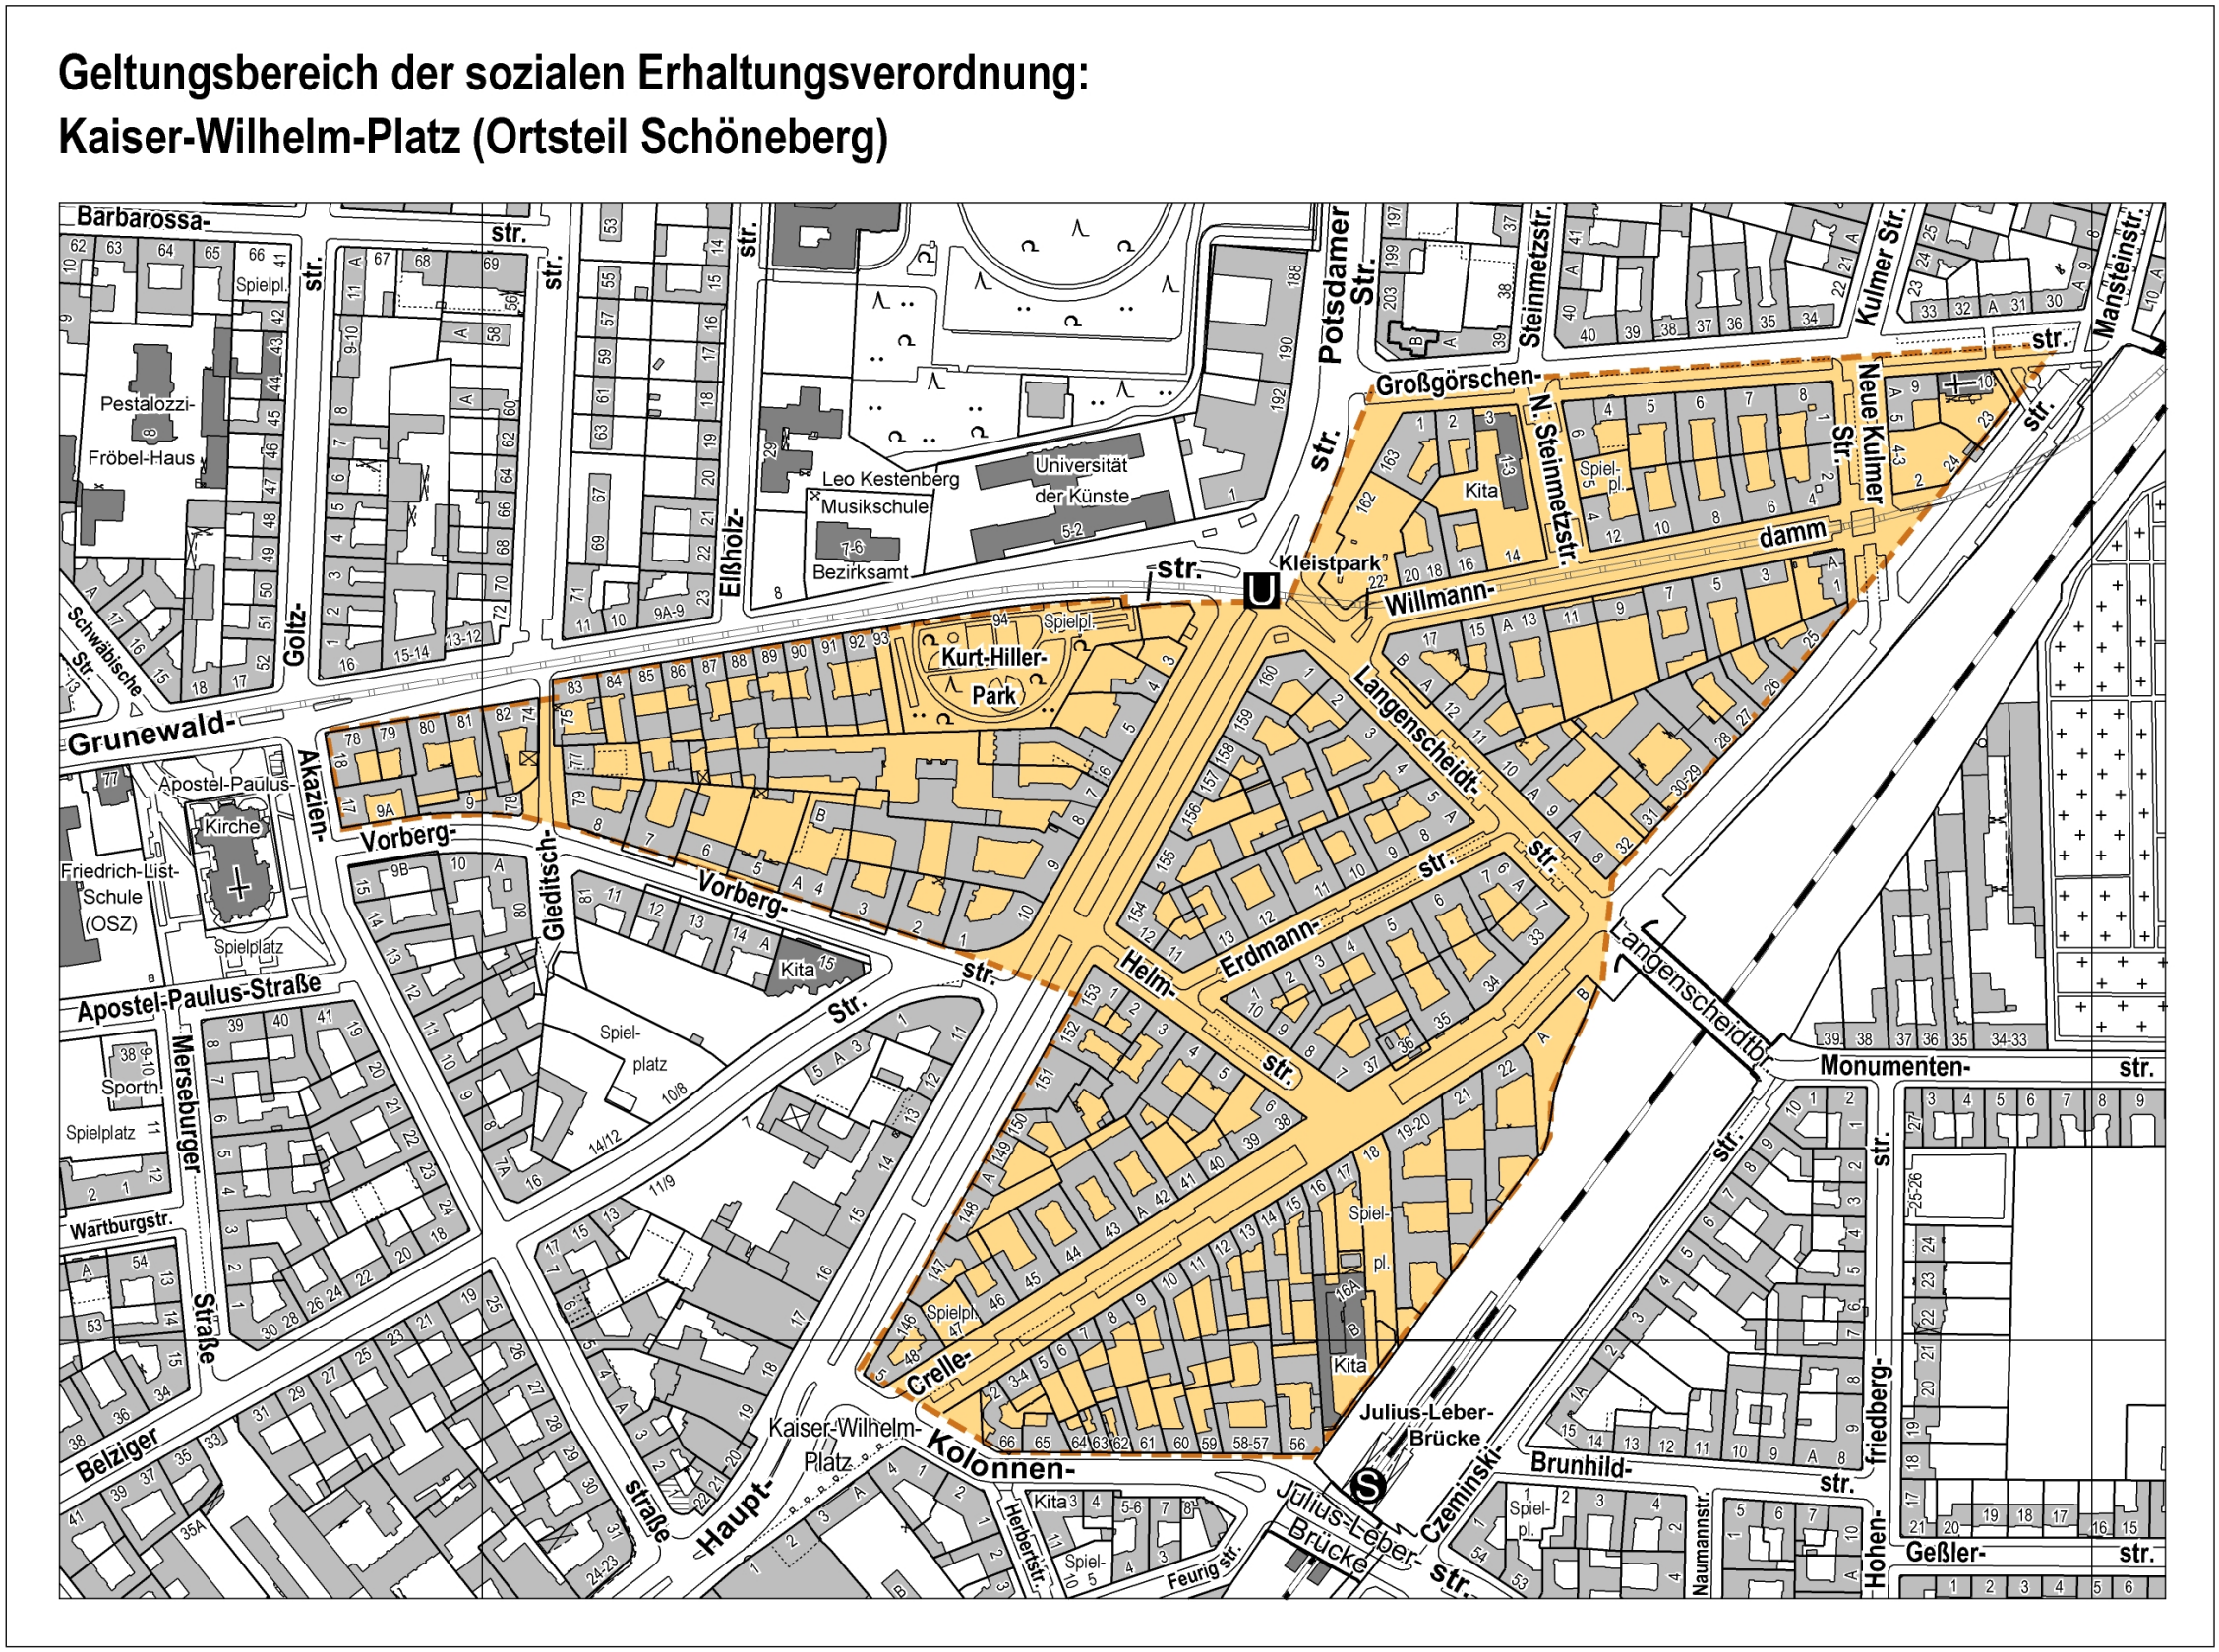 Bildvergrößerung: Übersicht des Geltungsbereichs der Erhaltungsverordnung Kaiser-Wilhelm-Platz nach Erweiterung